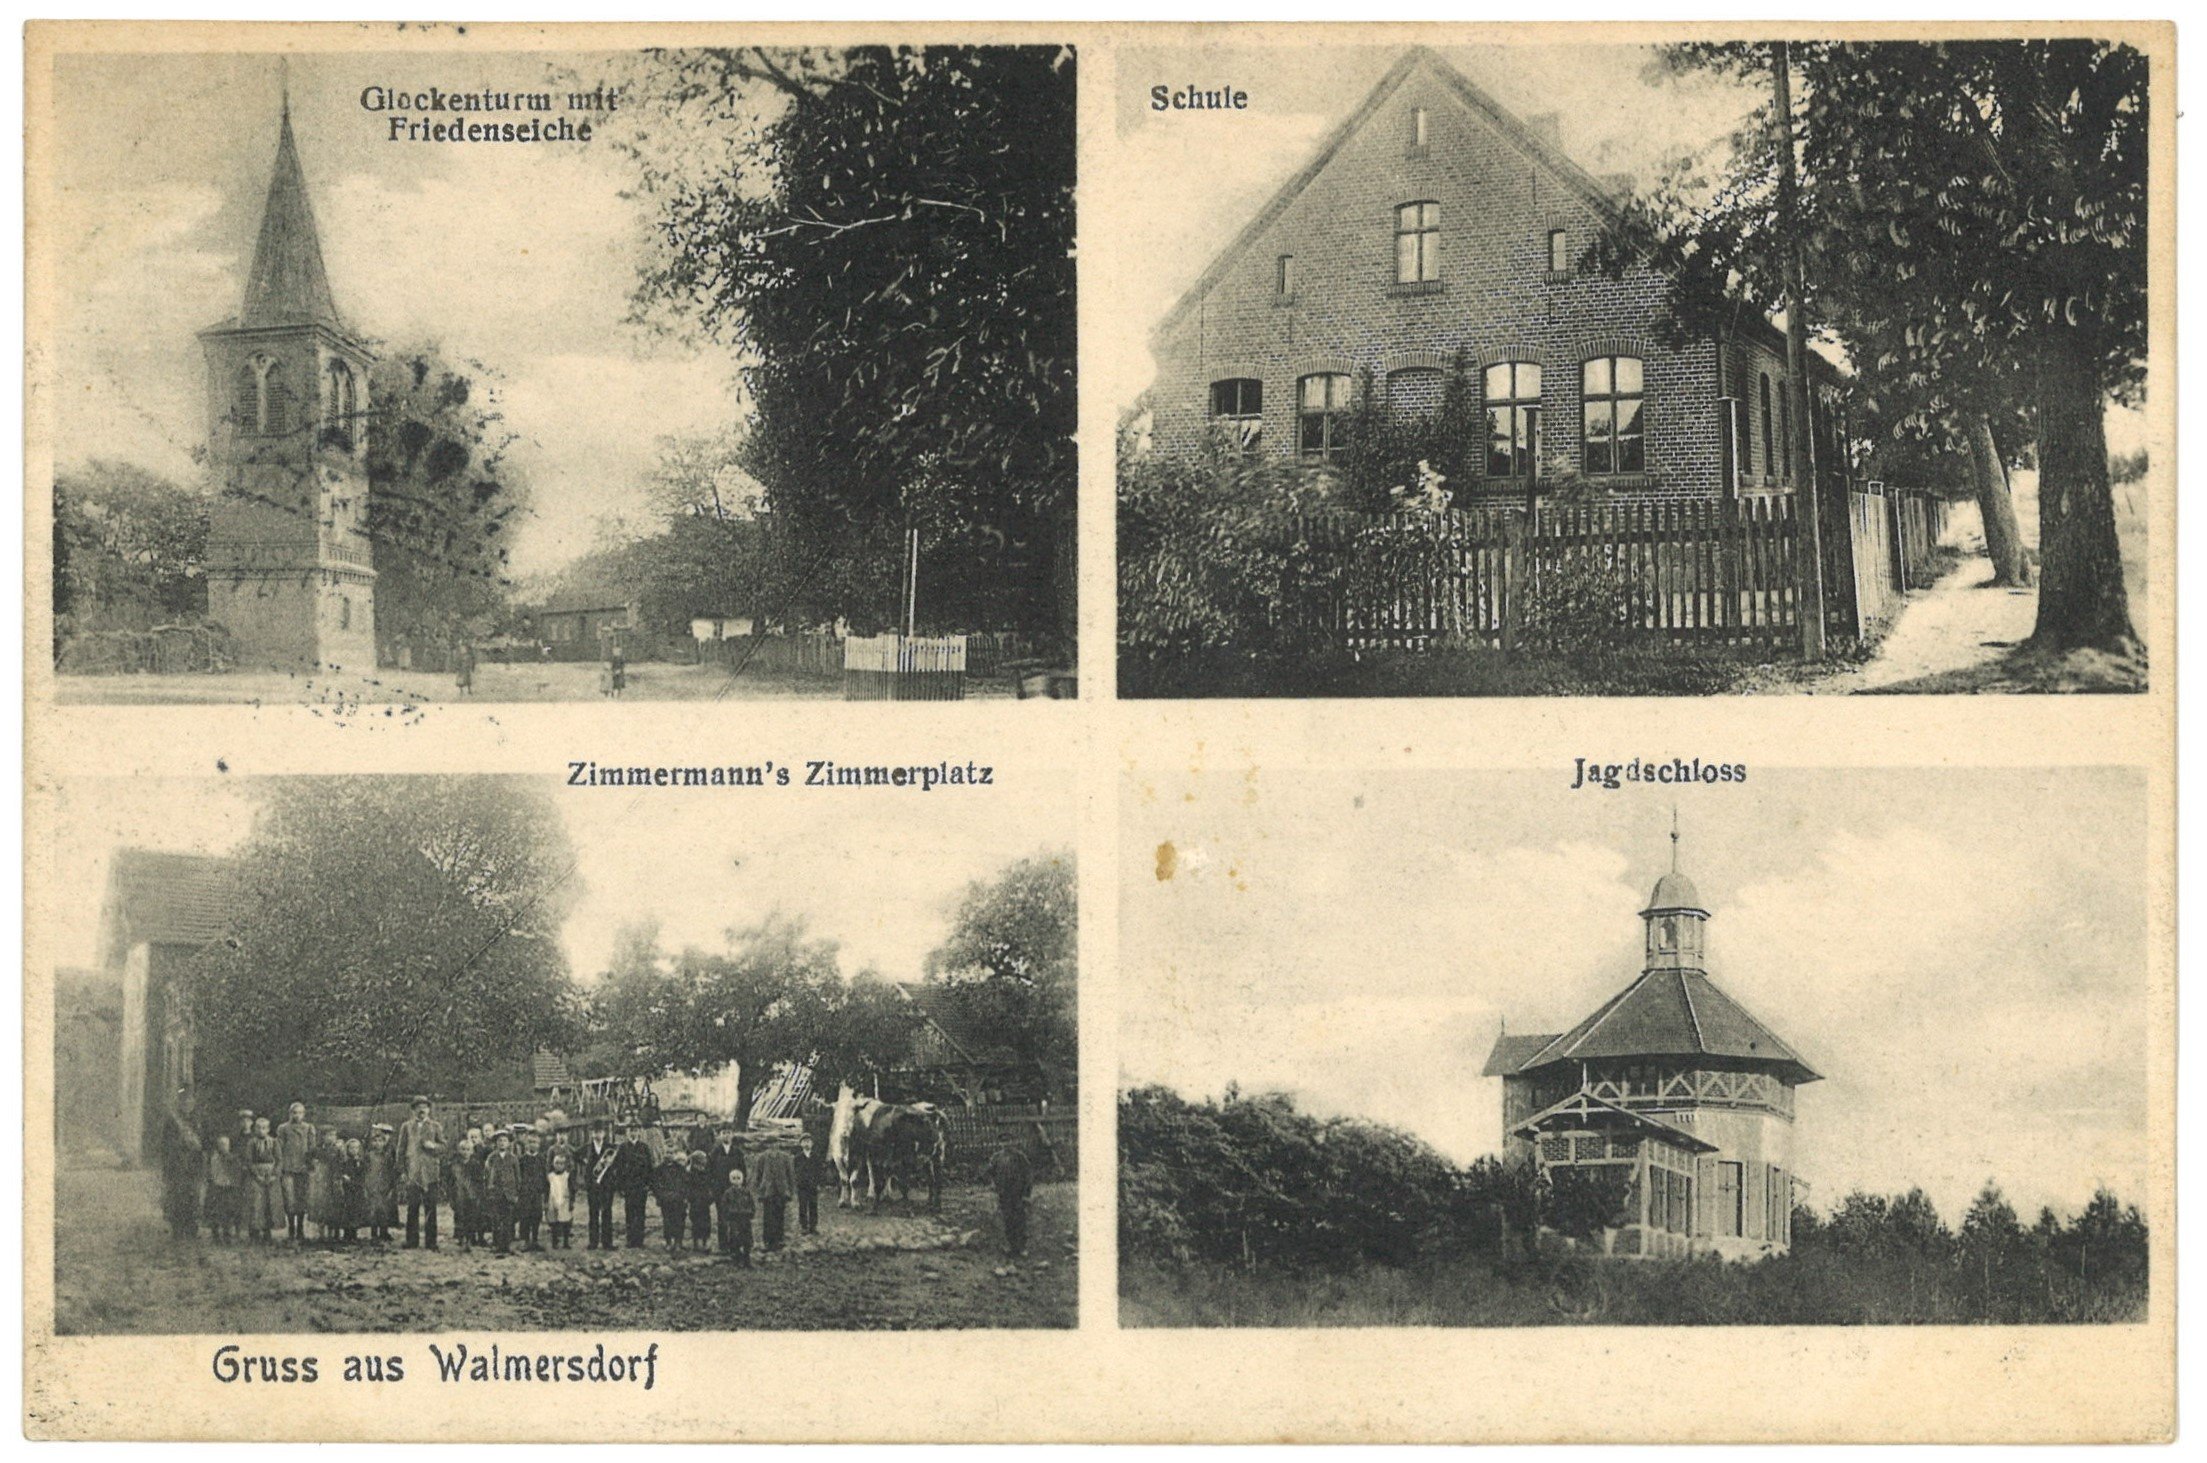 Walmersdorf (Kr. Züllichau-Schwiebus) [Woliemirzyce]: Vier Ansichten (Landesgeschichtliche Vereinigung für die Mark Brandenburg e.V. CC BY)